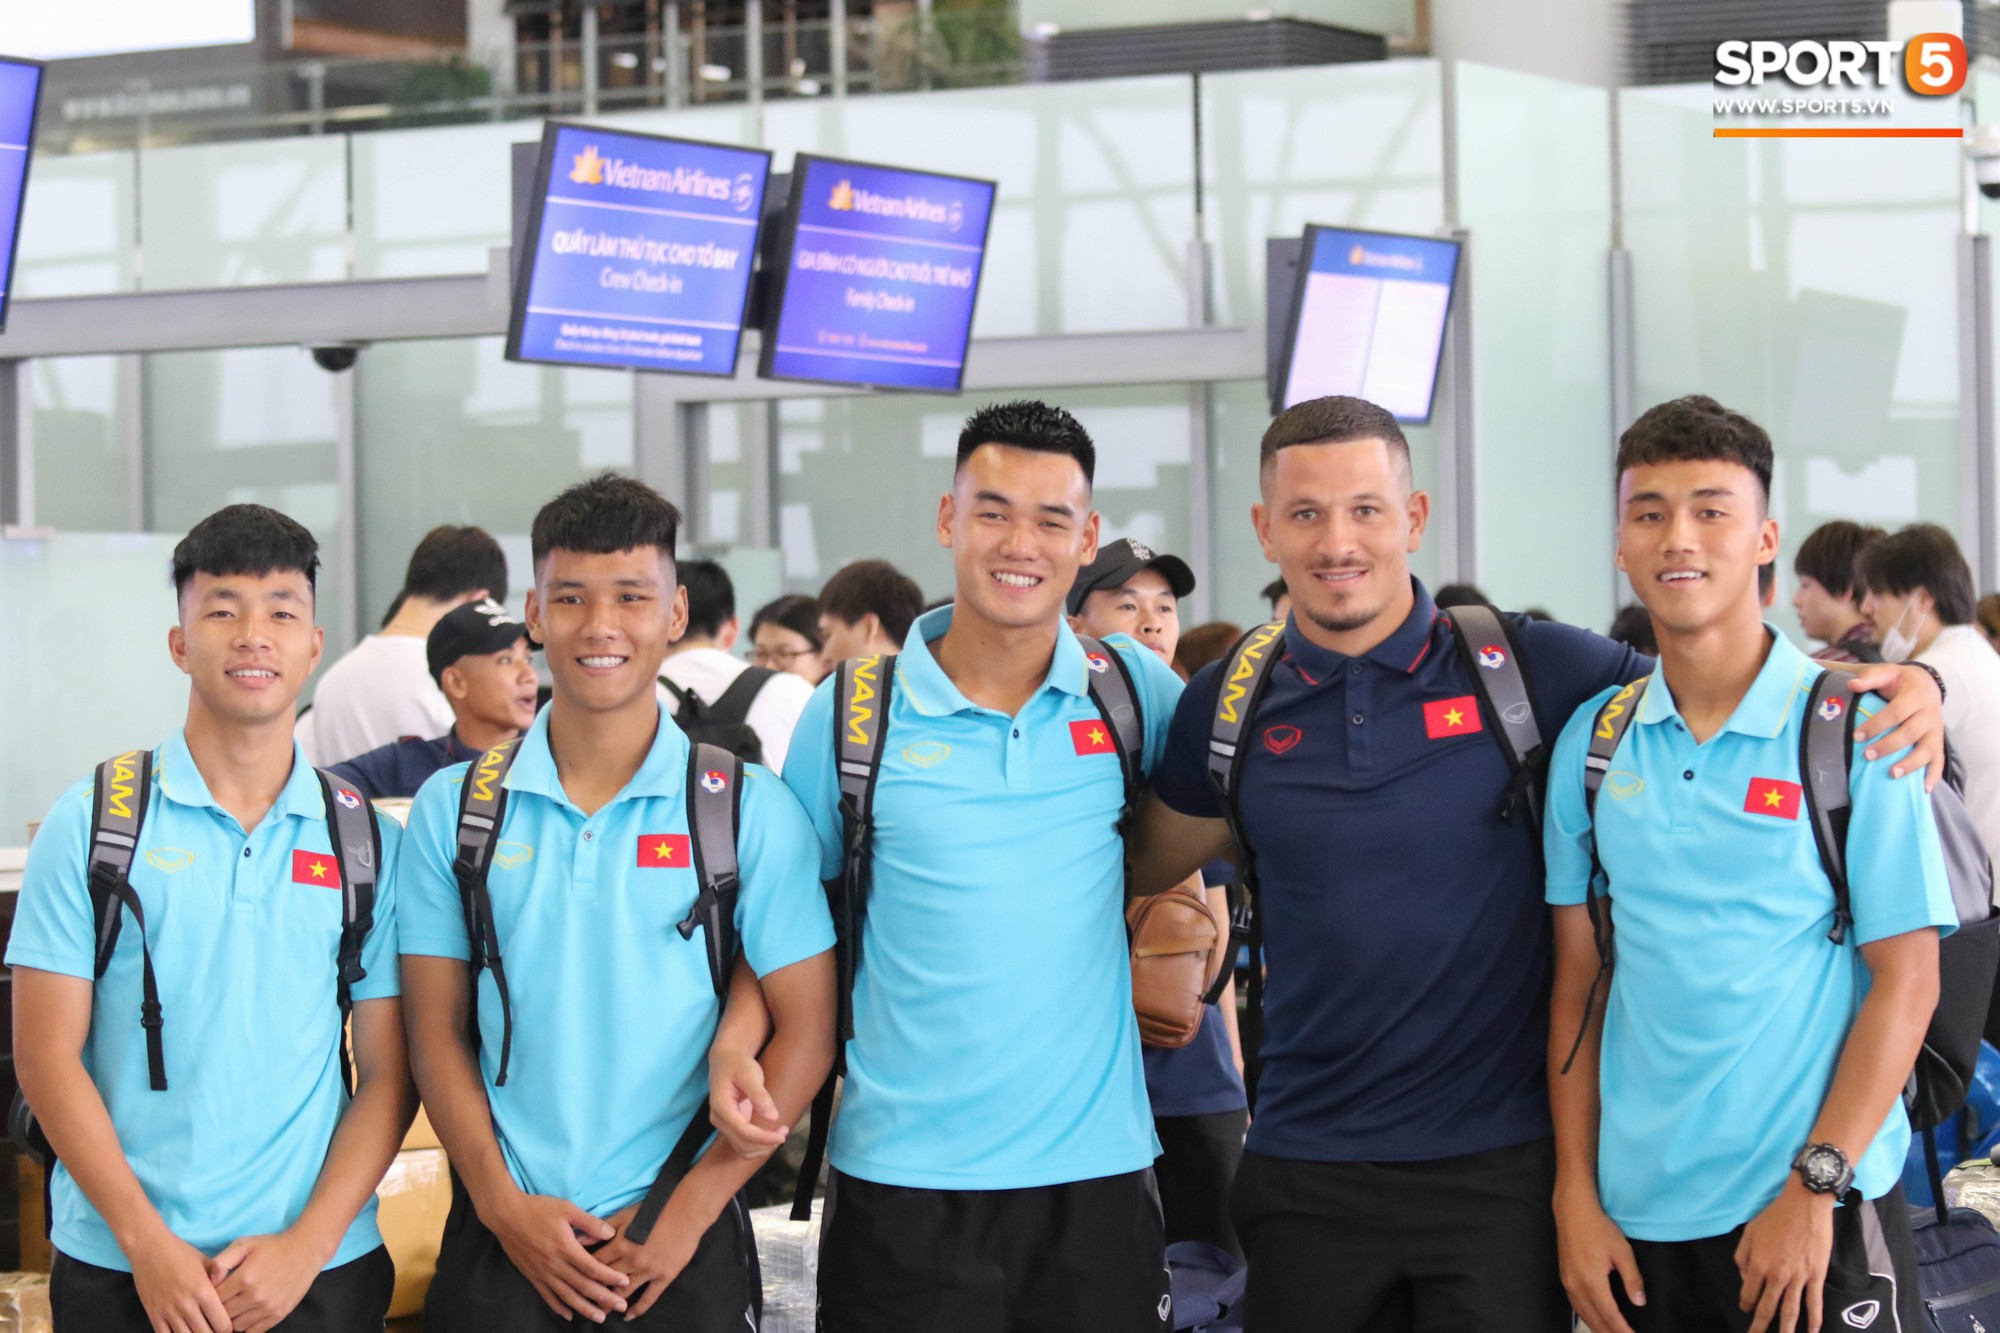 Dàn tuyển thủ U18 Việt Nam rủ nhau đảo ngói khá bảnh bao trước giờ lên đường tập huấn tại Nhật Bản - Ảnh 7.